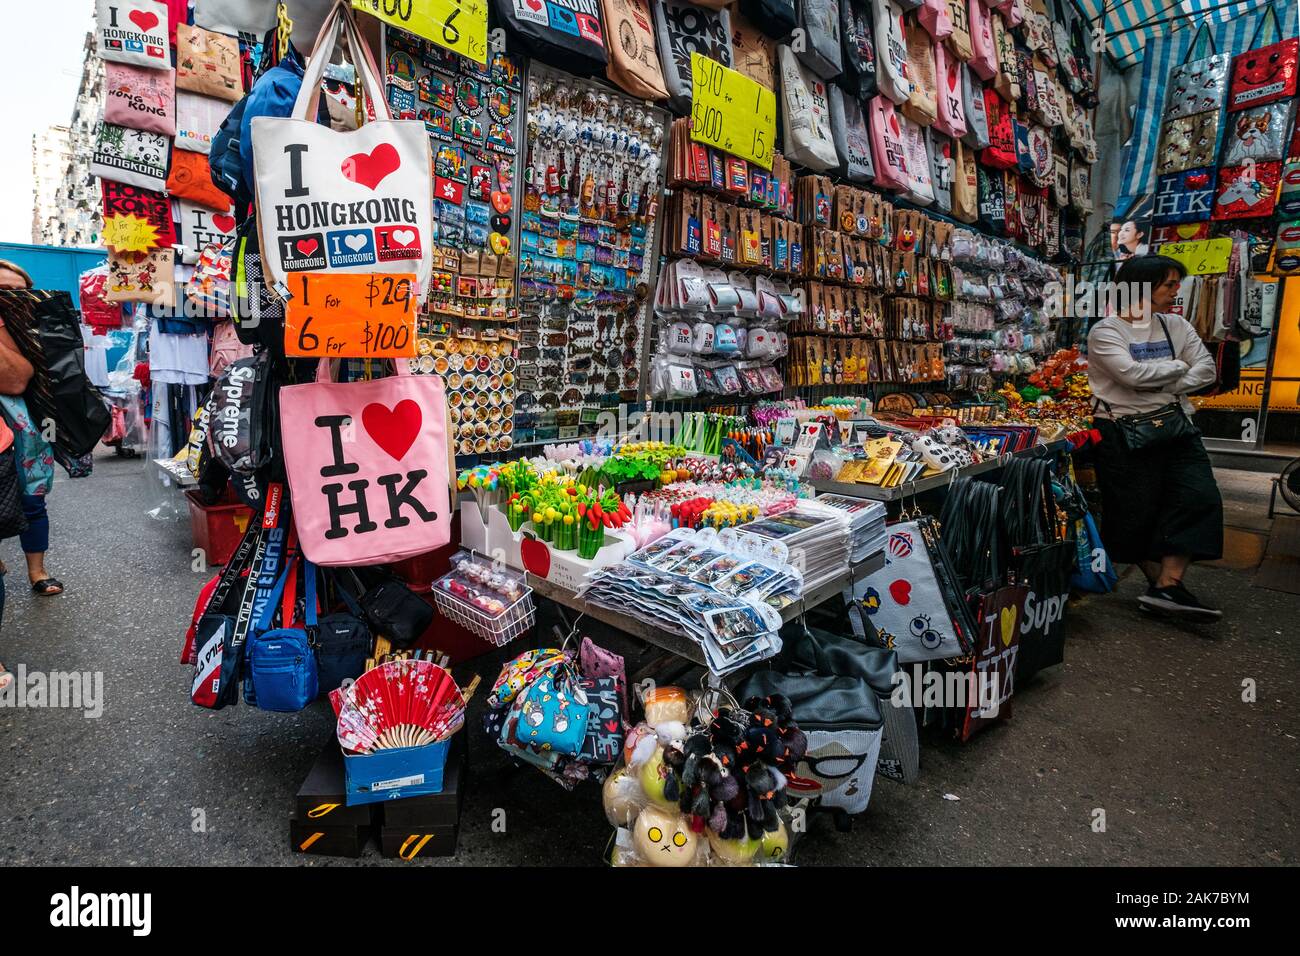 HongKong, China - November, 2019: Mode, Taschen, Kleidung und Merchandise auf Street Market (Markt) Ladie's in Hongkong, Tung Choi Street Stockfoto